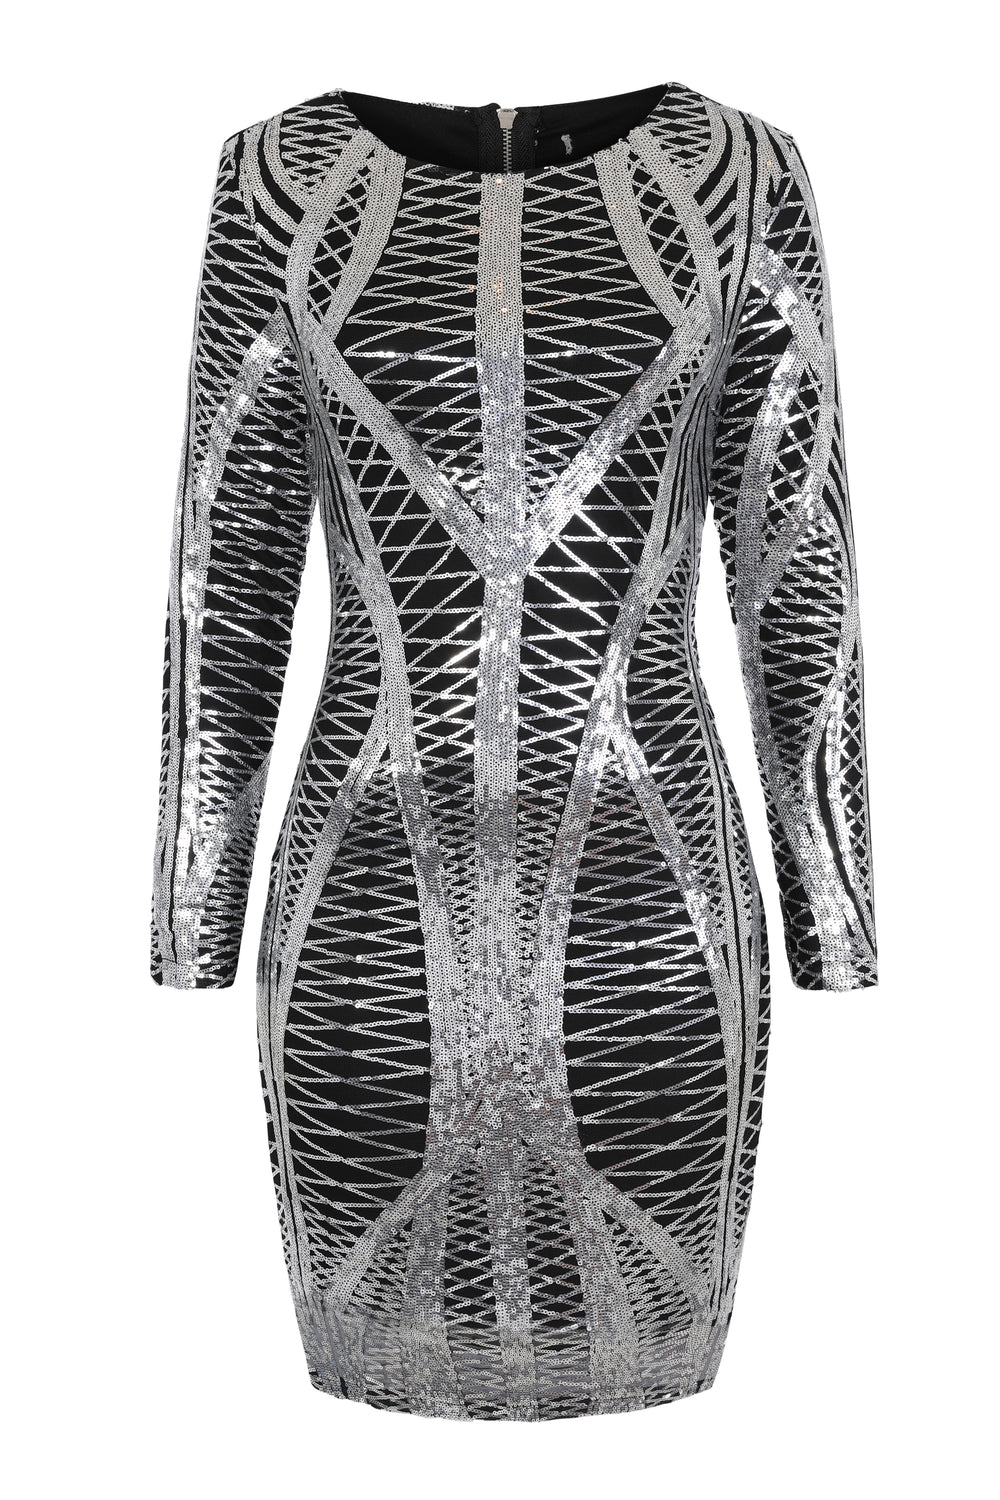 Hilton Luxe Black Silver Cage Sequin Bandage Bodycon Illusion Dress